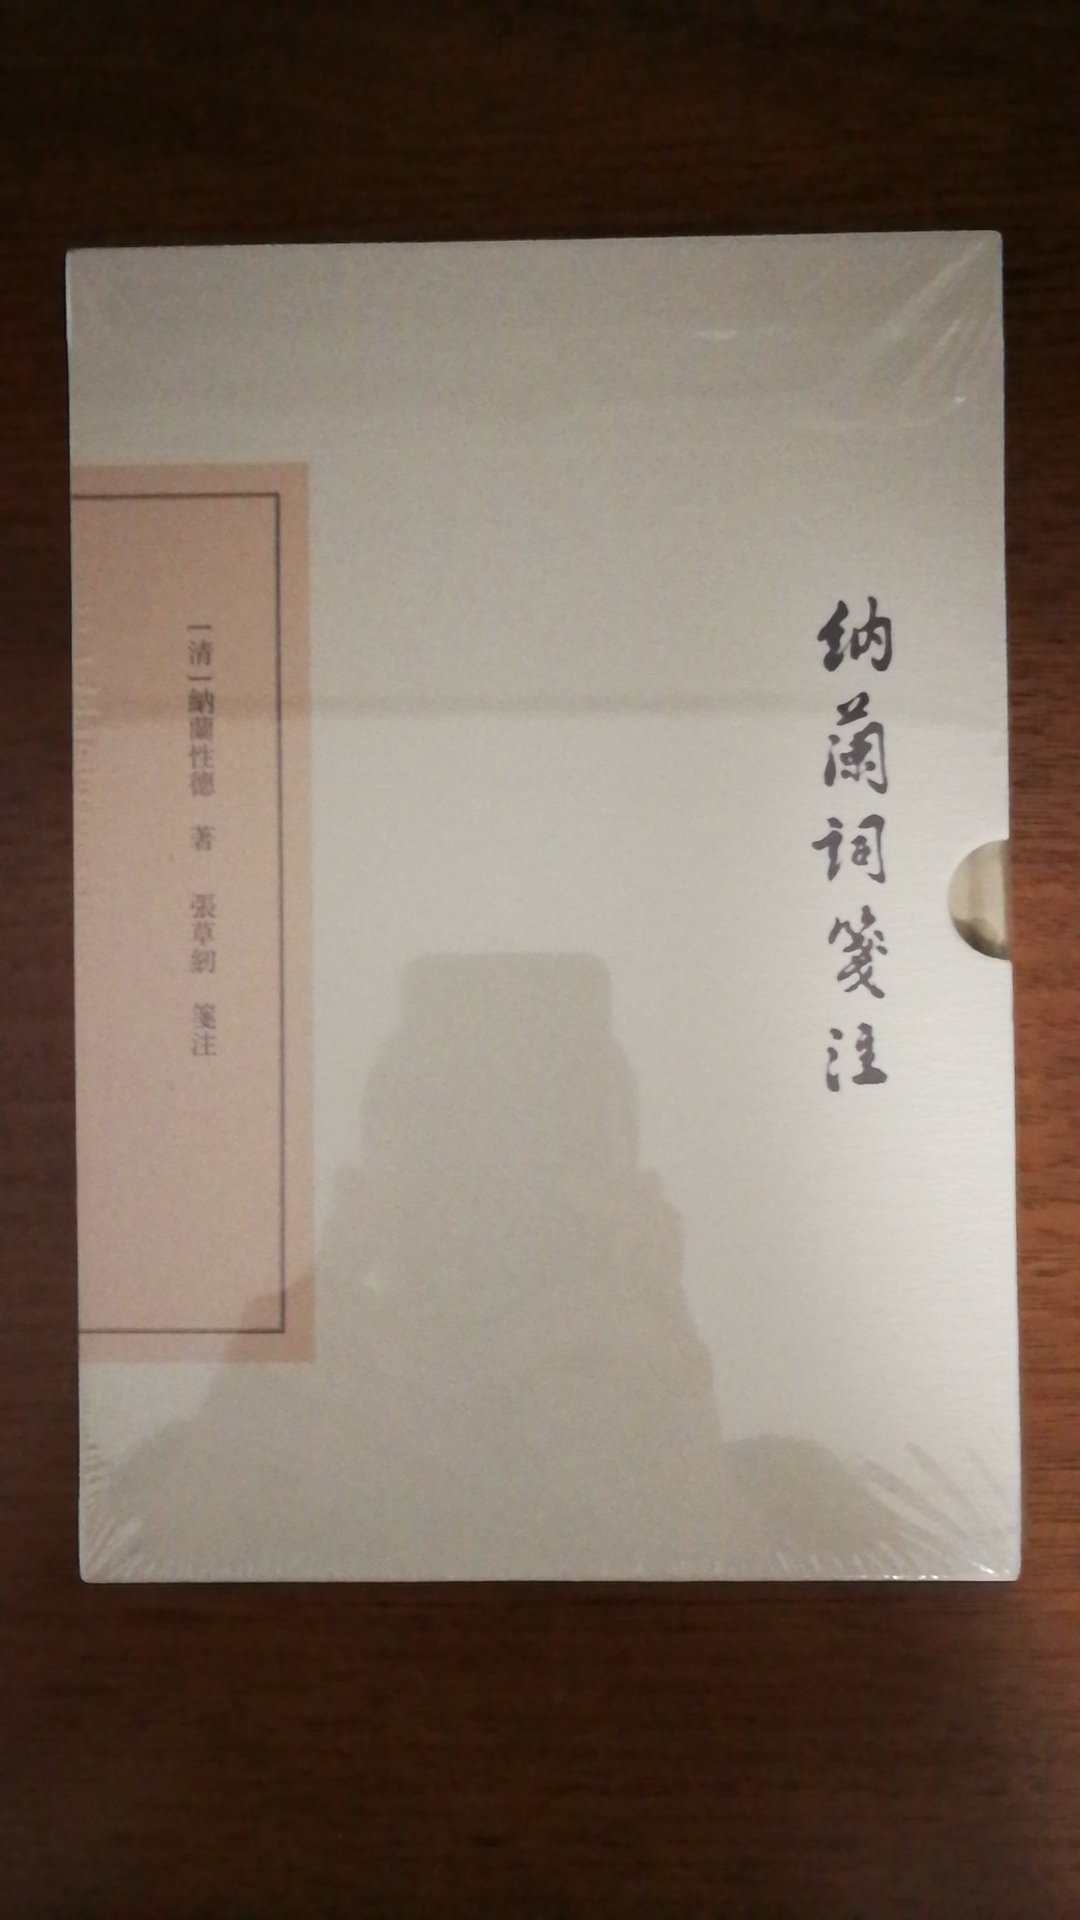 上海古籍出版社推出的纳兰词笺注，精装16开，书脊锁线纸质优良，排版印刷得体大方，活动期间价格实惠，送货速度快，非常满意。